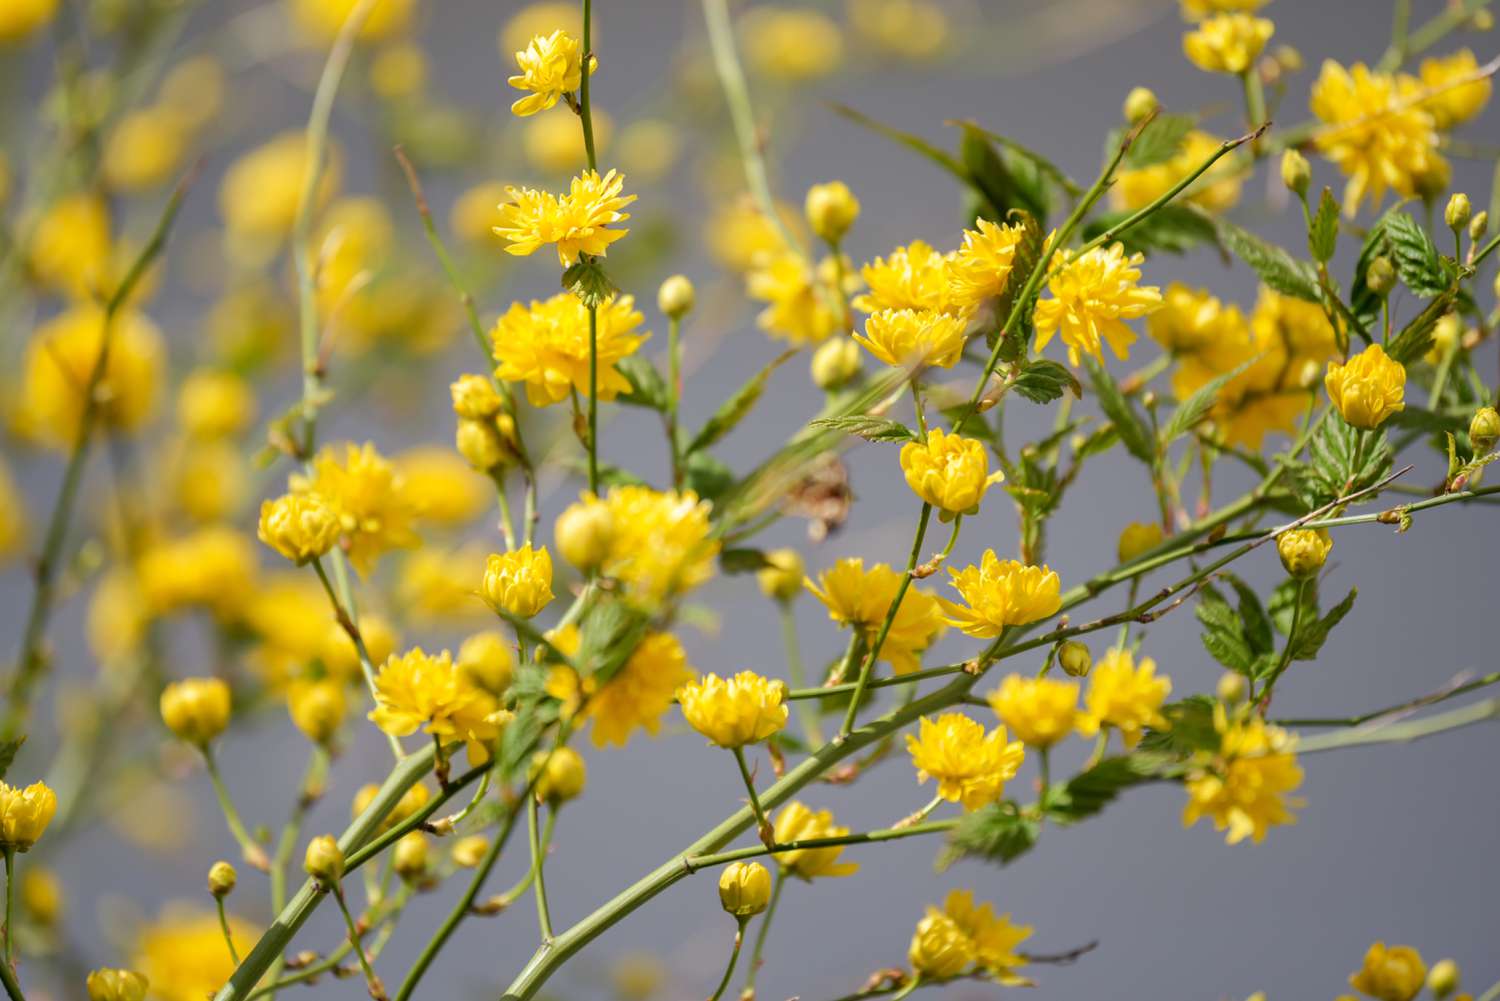 Kerria-Strauch mit flauschigen gelben Blüten und Knospen an langen dünnen Zweigen